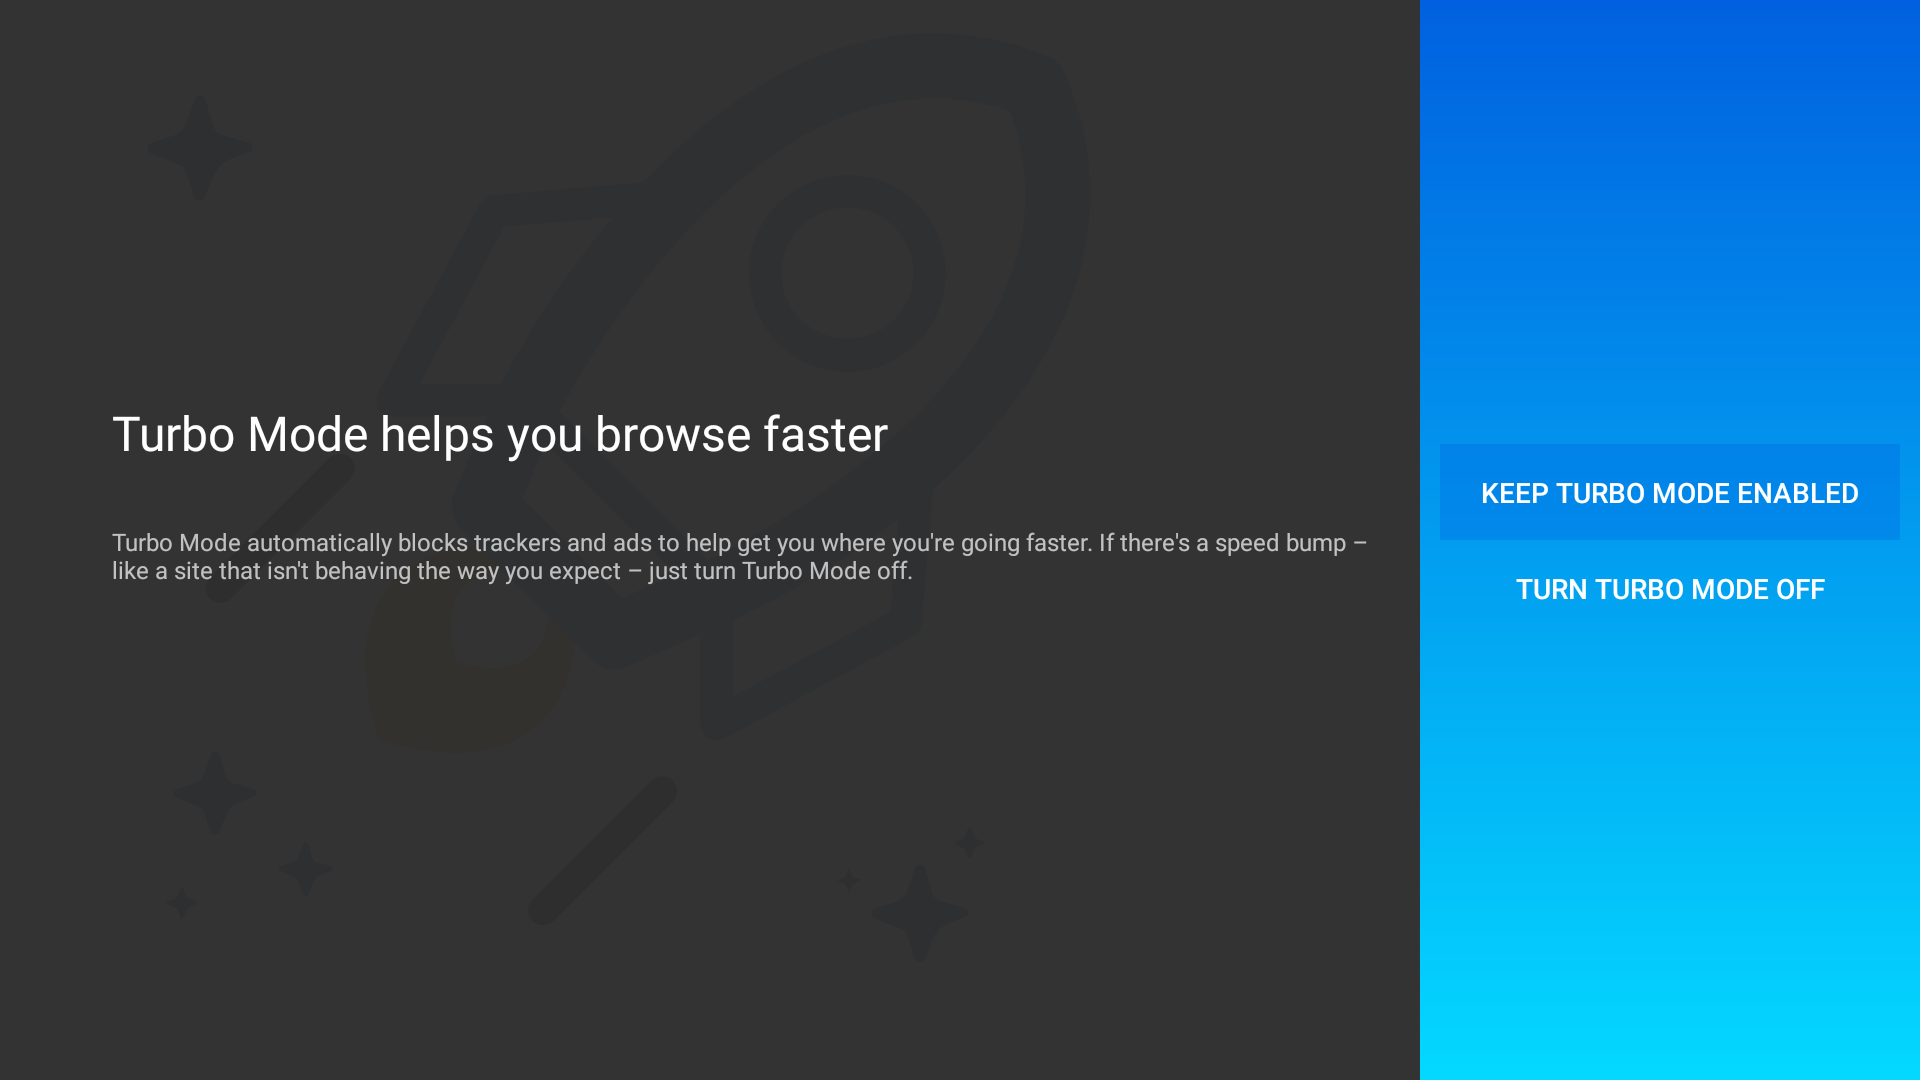 Firefox Updates Their Fire TV App